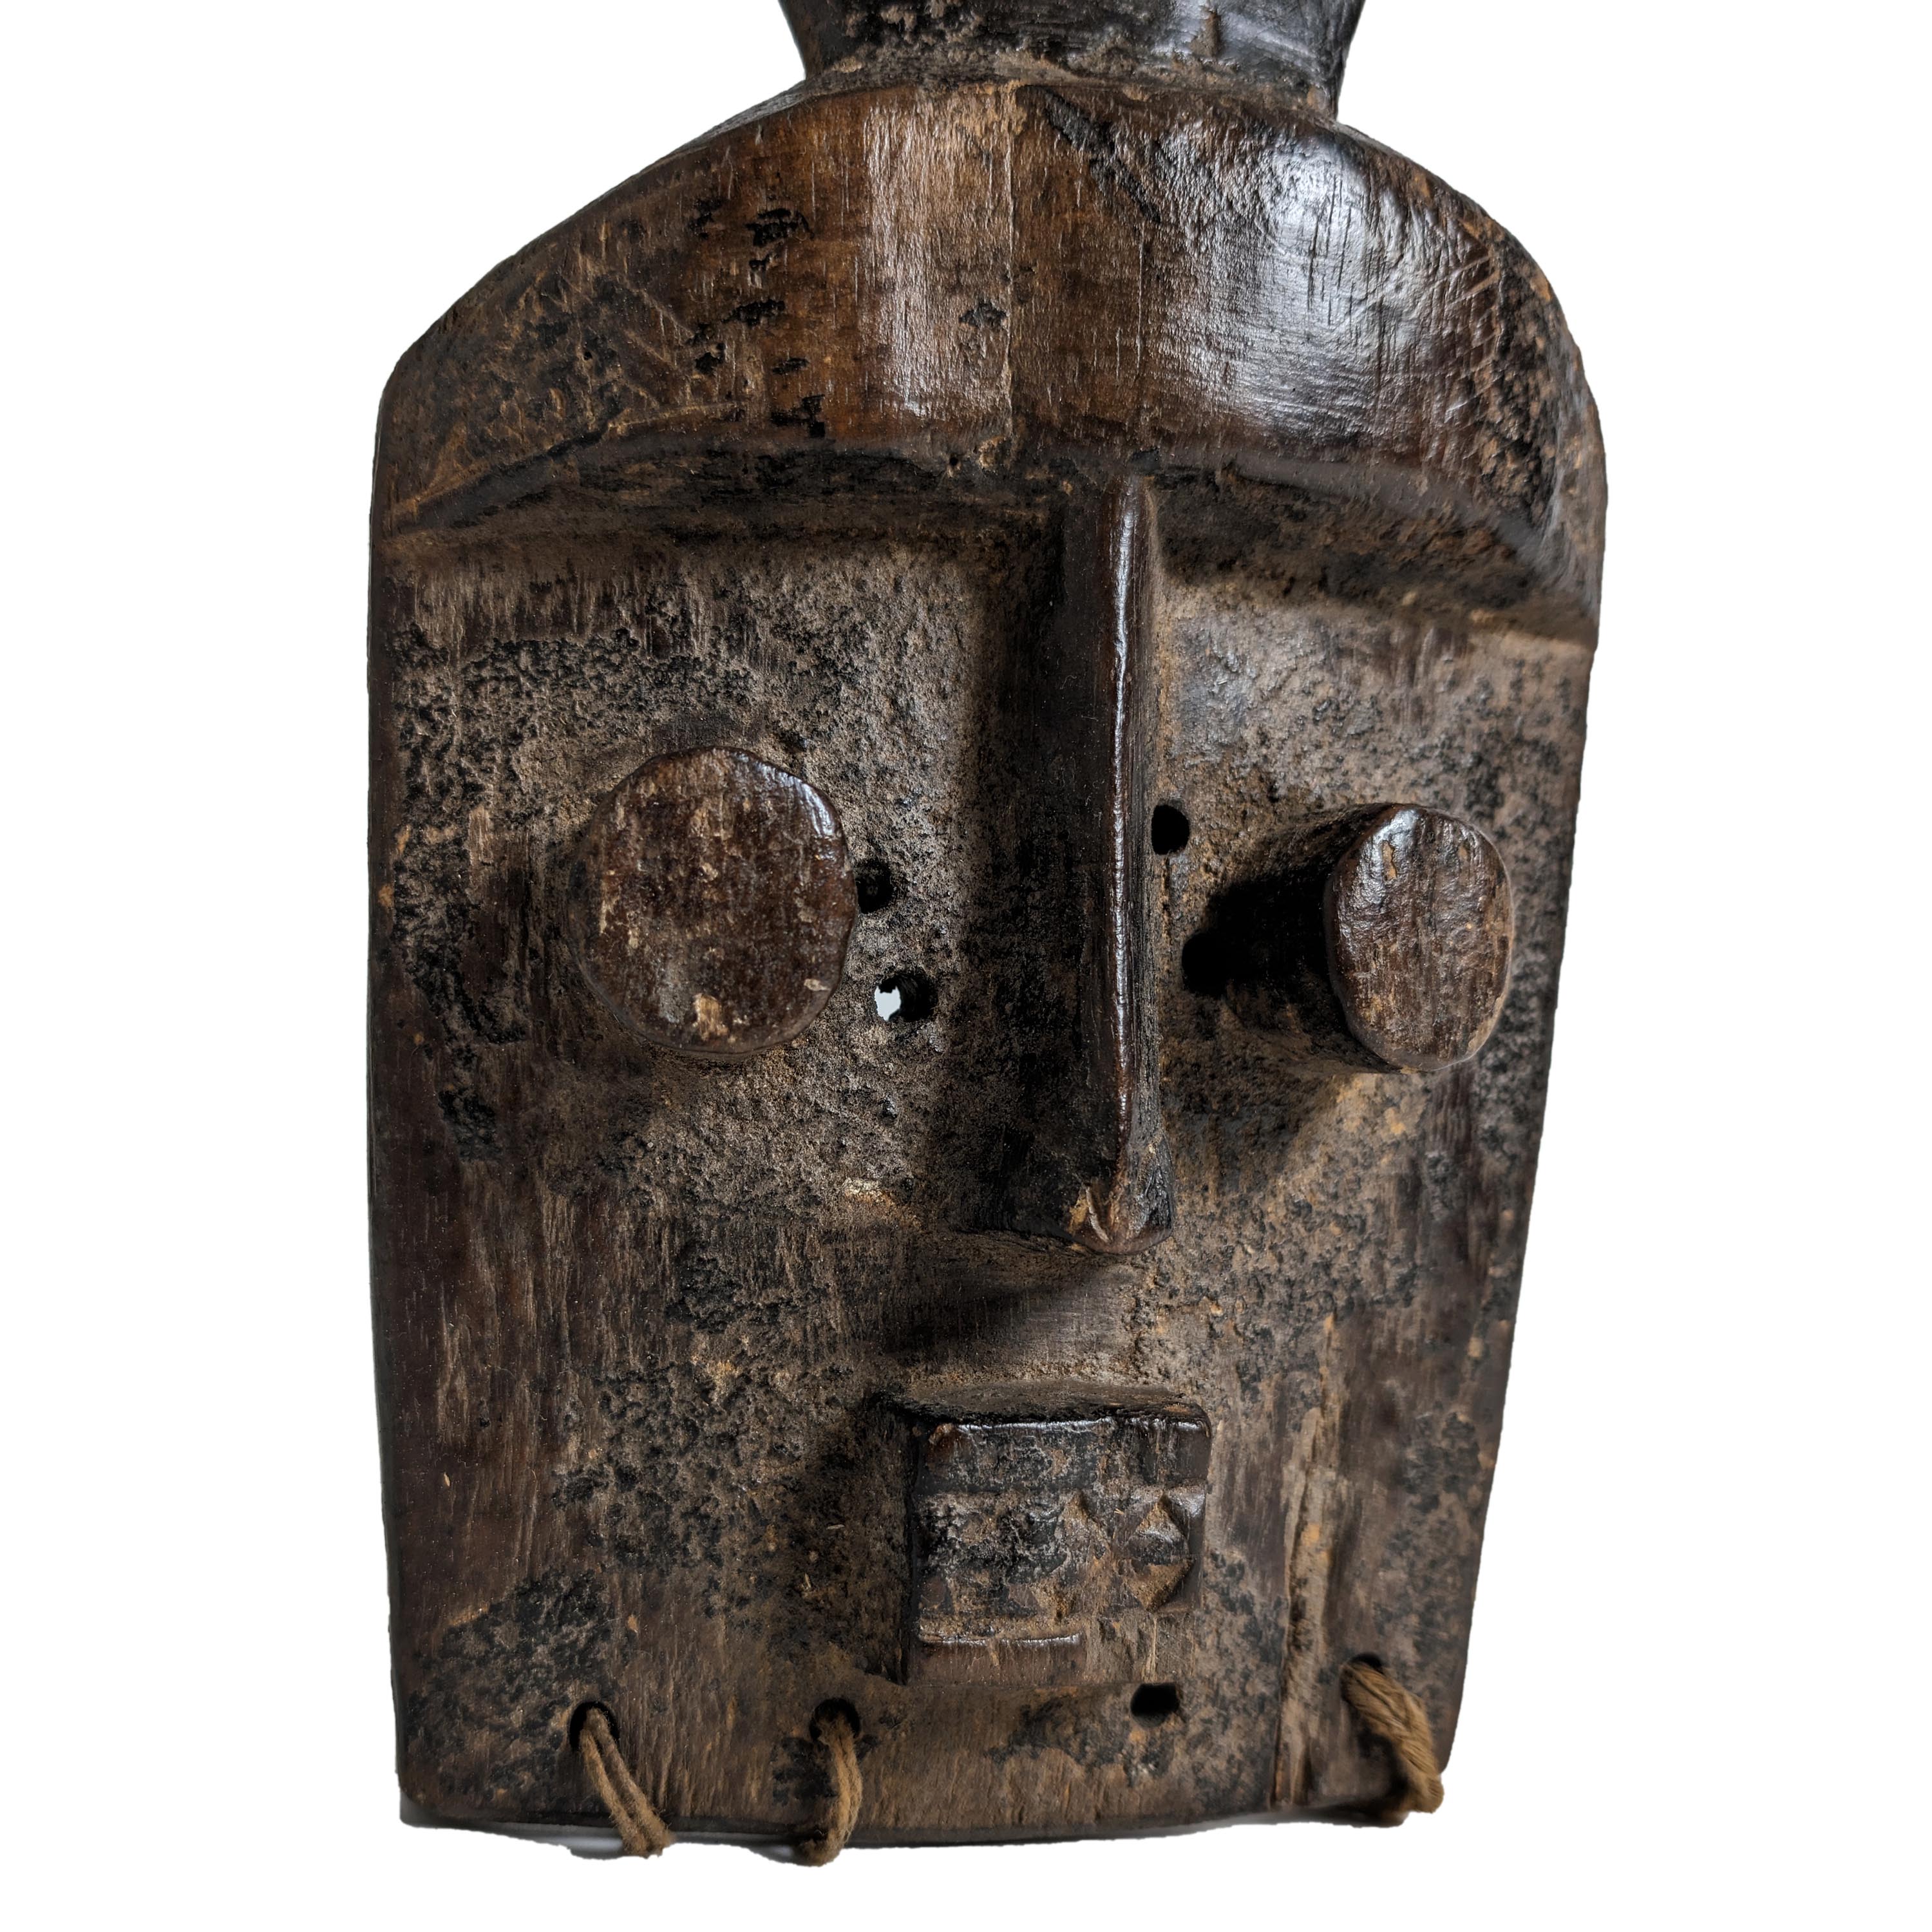 ヨルバ族仮面 34cm アフリカン プリミティブアート マスク - 美術、工芸品